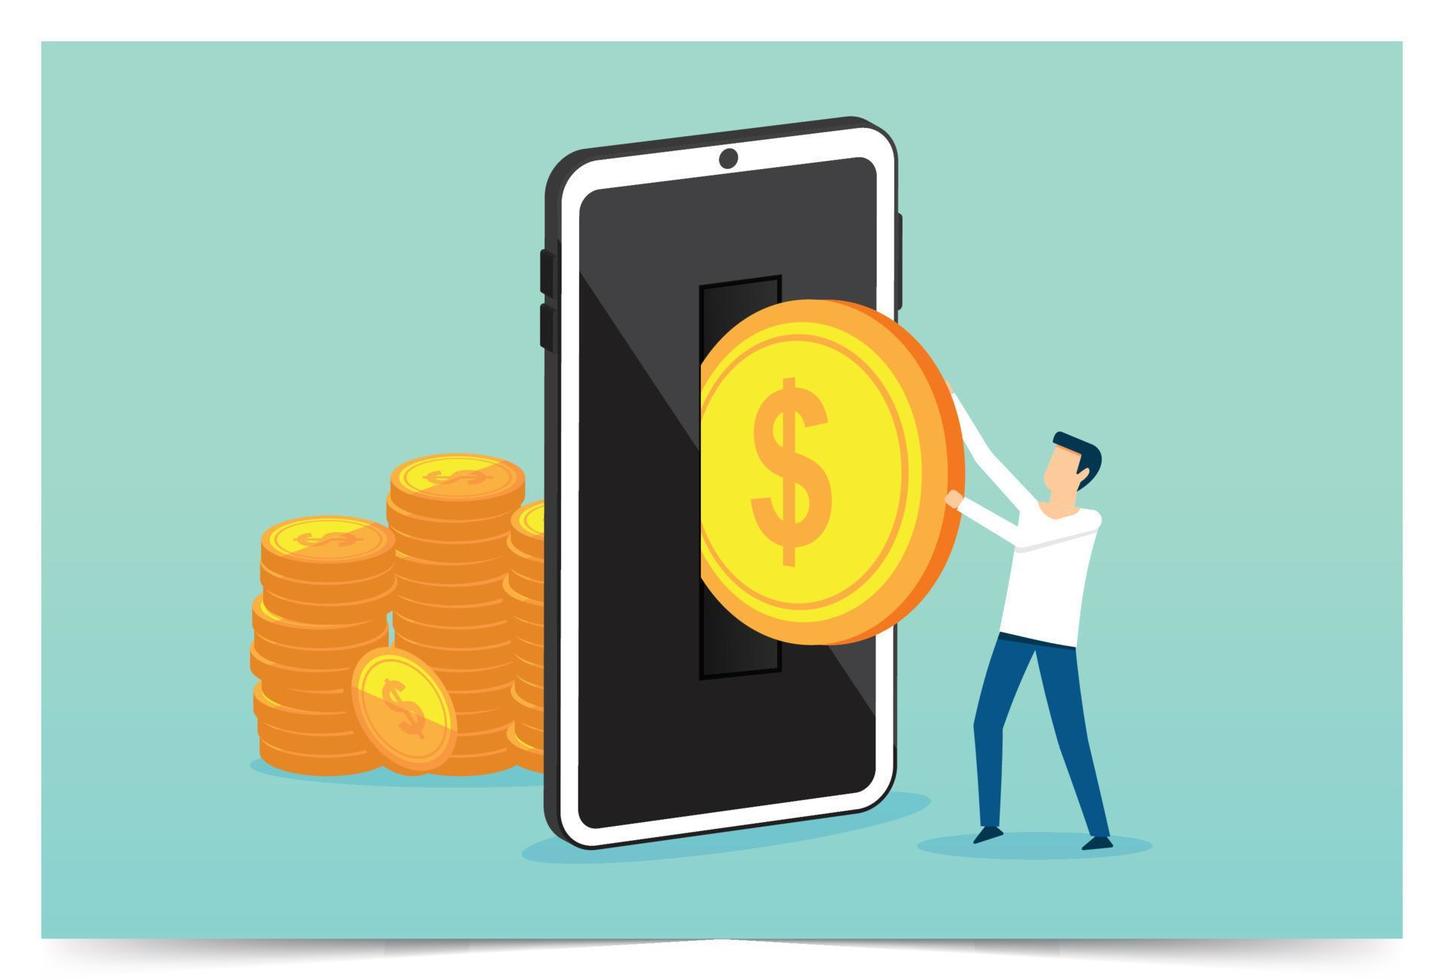 pengaöverföring från smartphone, onlinecashback, ta emot cashback för en köpare, onlinebank, spara pengar, pengaråterbetalning vektor